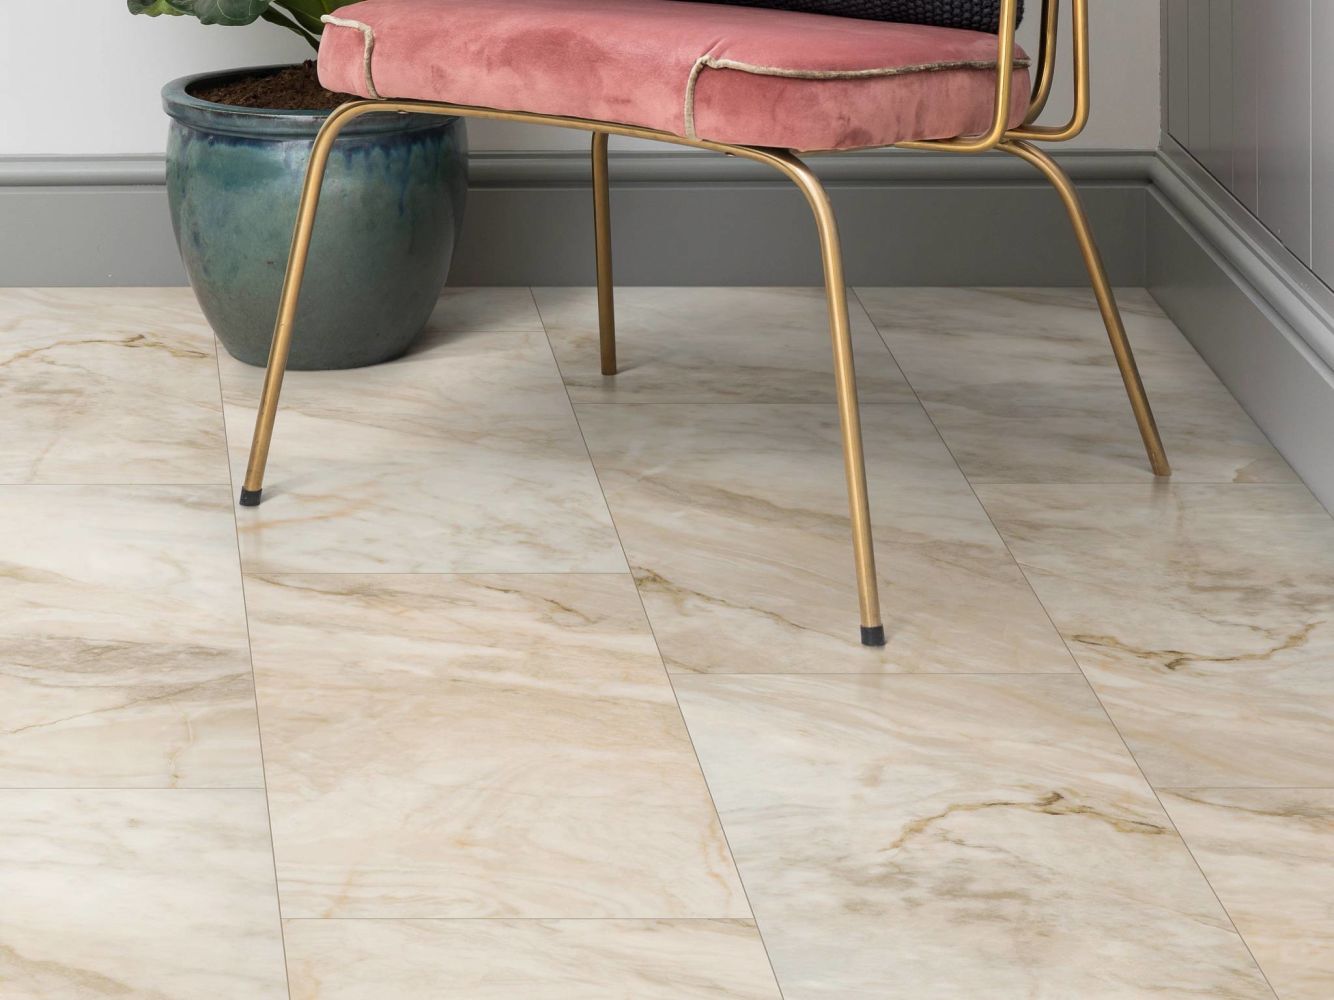 Shaw Floors Resilient Residential Paragon Tile Plus Jordan 06019_1022V